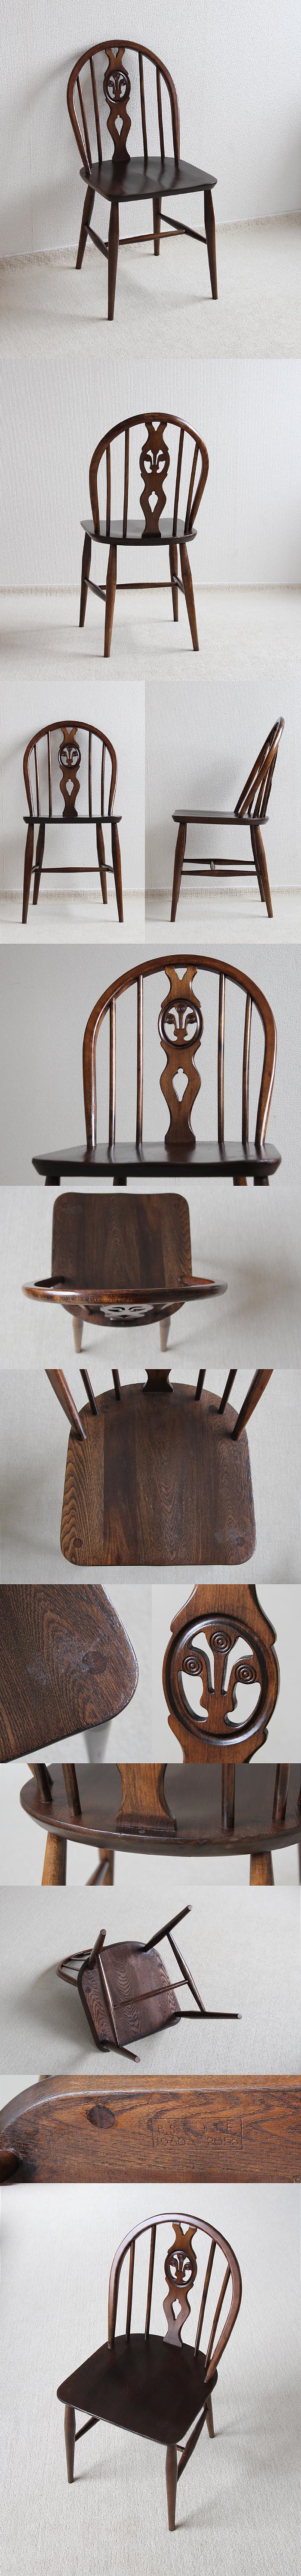 イギリス アンティーク アーコールチェア ERCOL 木製椅子 家具 「シスルバックチェア」V-723